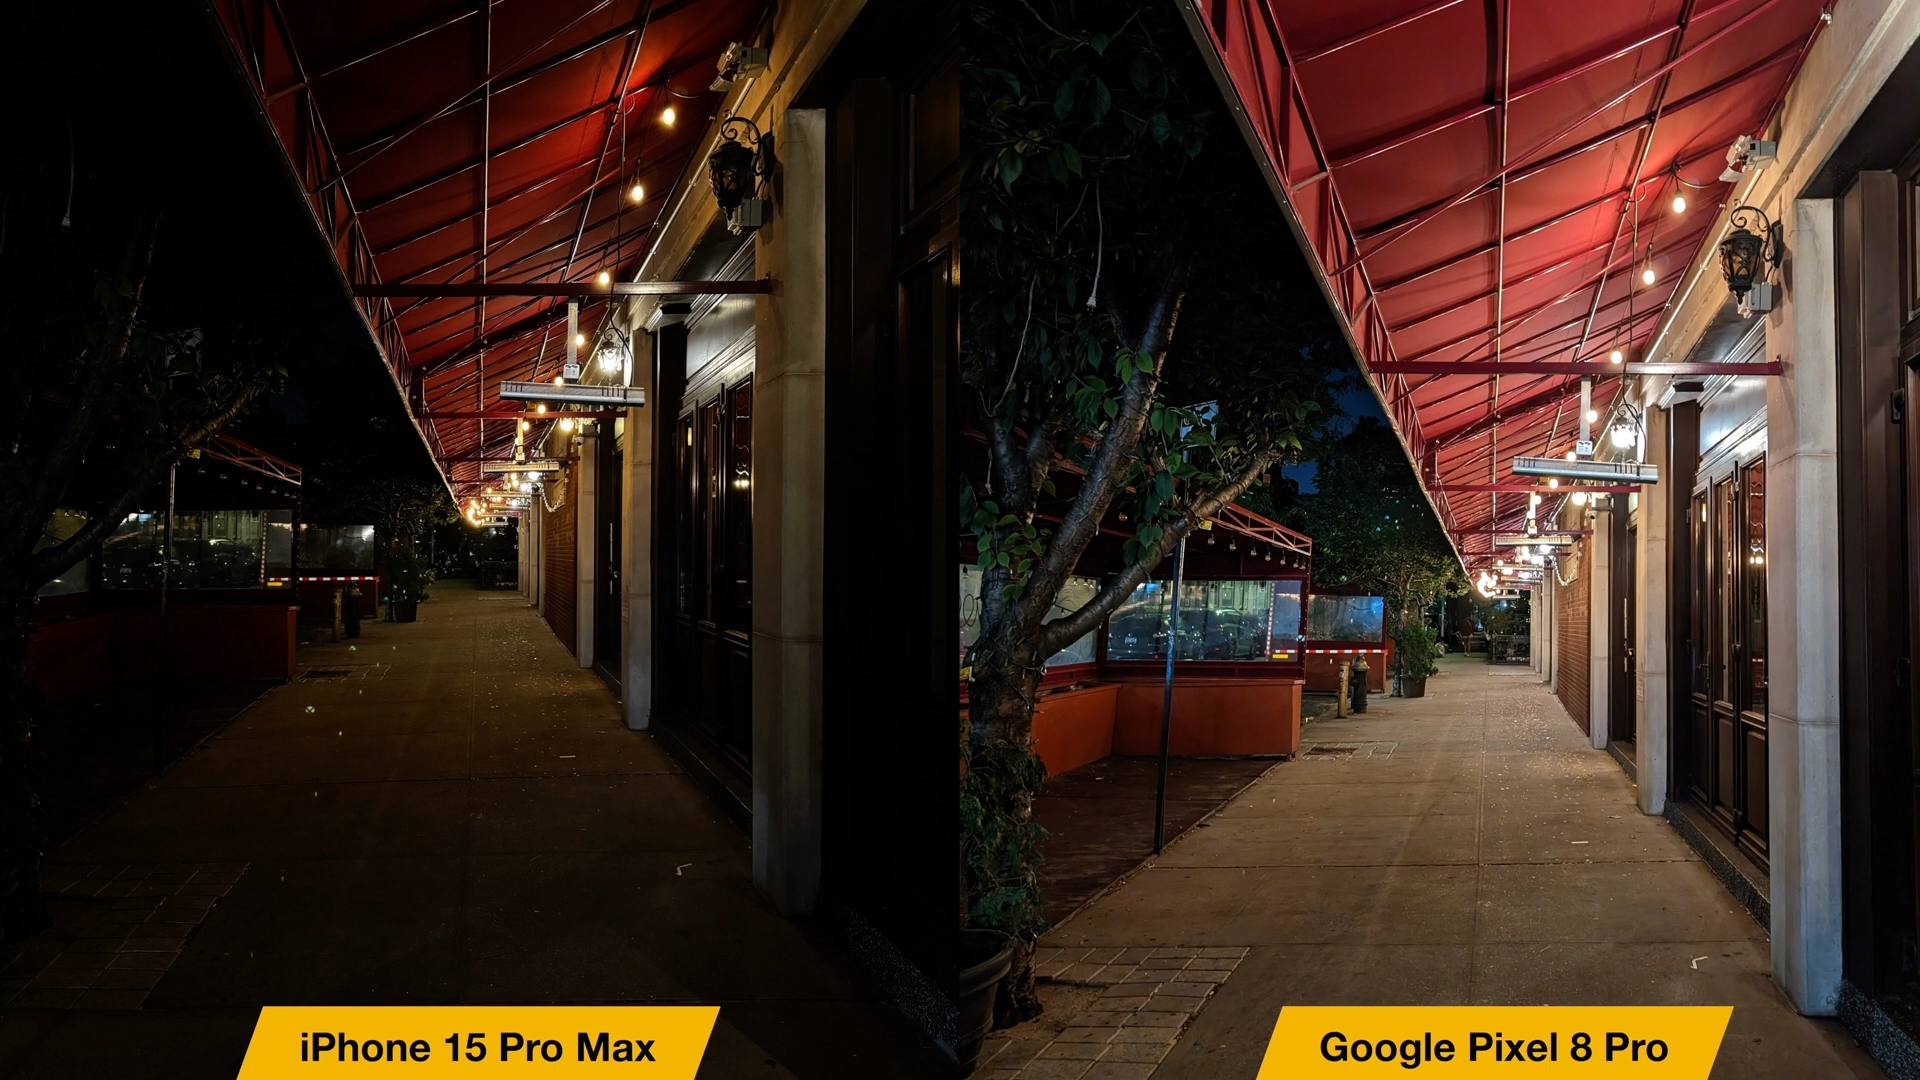 Van iPhoneIslam.com, twee foto's van een straat met twee lampen, vergelijking tussen iPhone 15 Pro Max en Google Pixel 8 Pro.